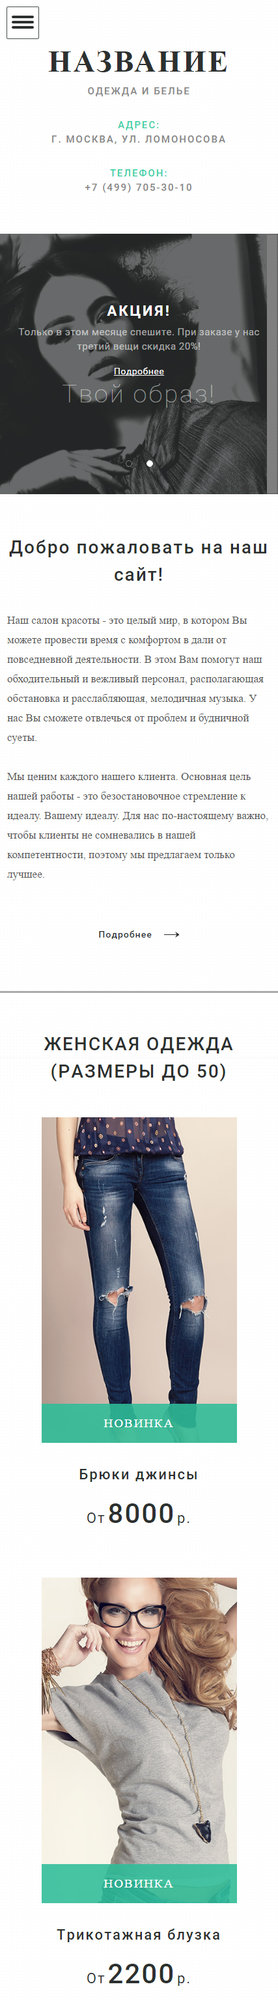 Готовый Сайт-Бизнес № 1699266 - Одежда, белье (Мобильная версия)